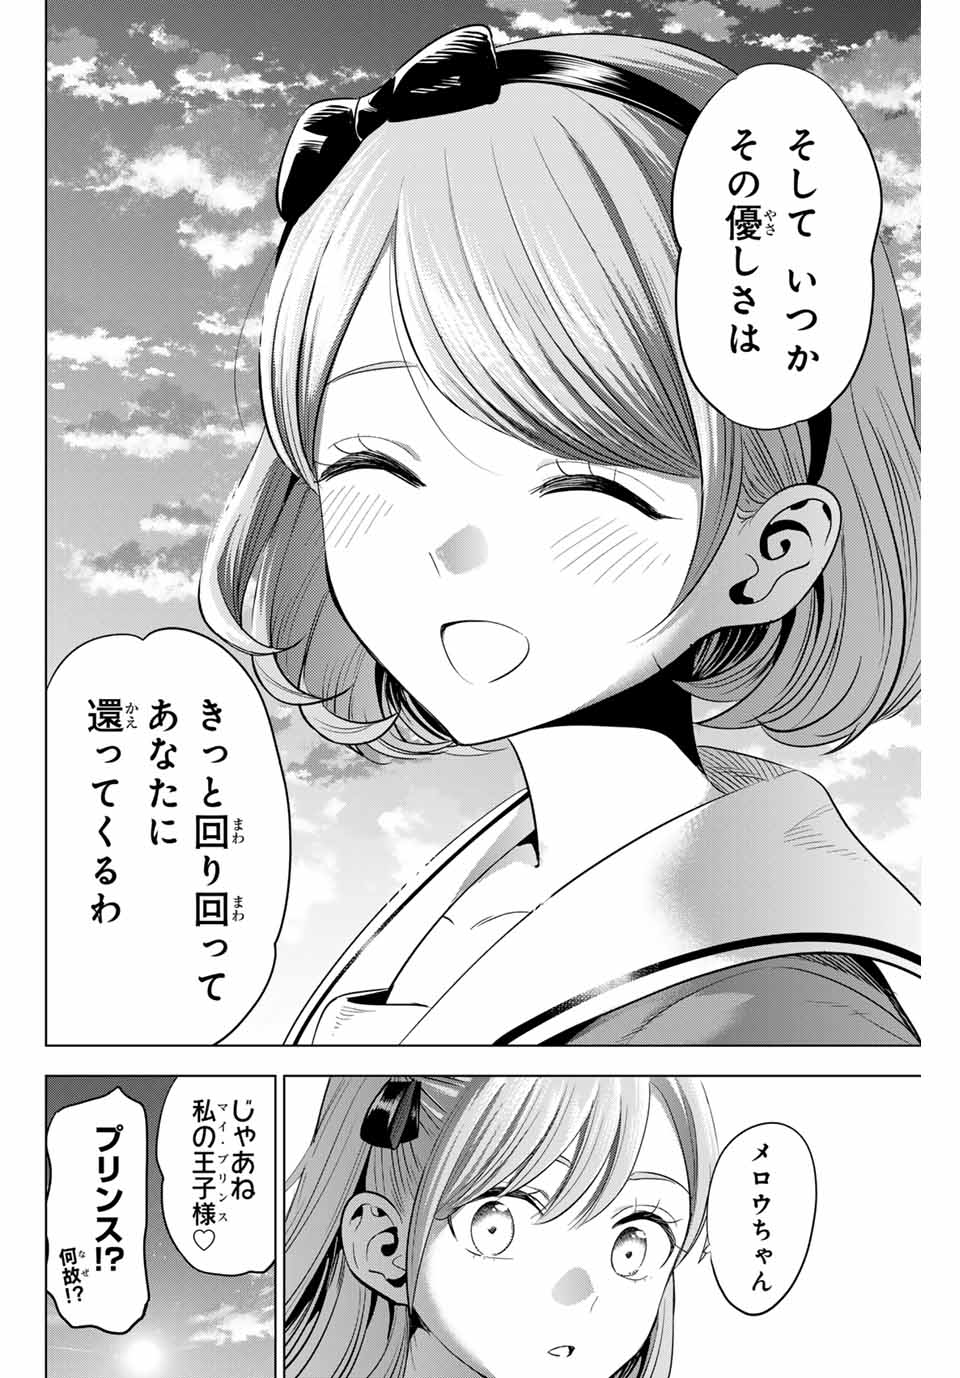 Kuroneko to Majo no Kyoushitsu - Chapter 48 - Page 22